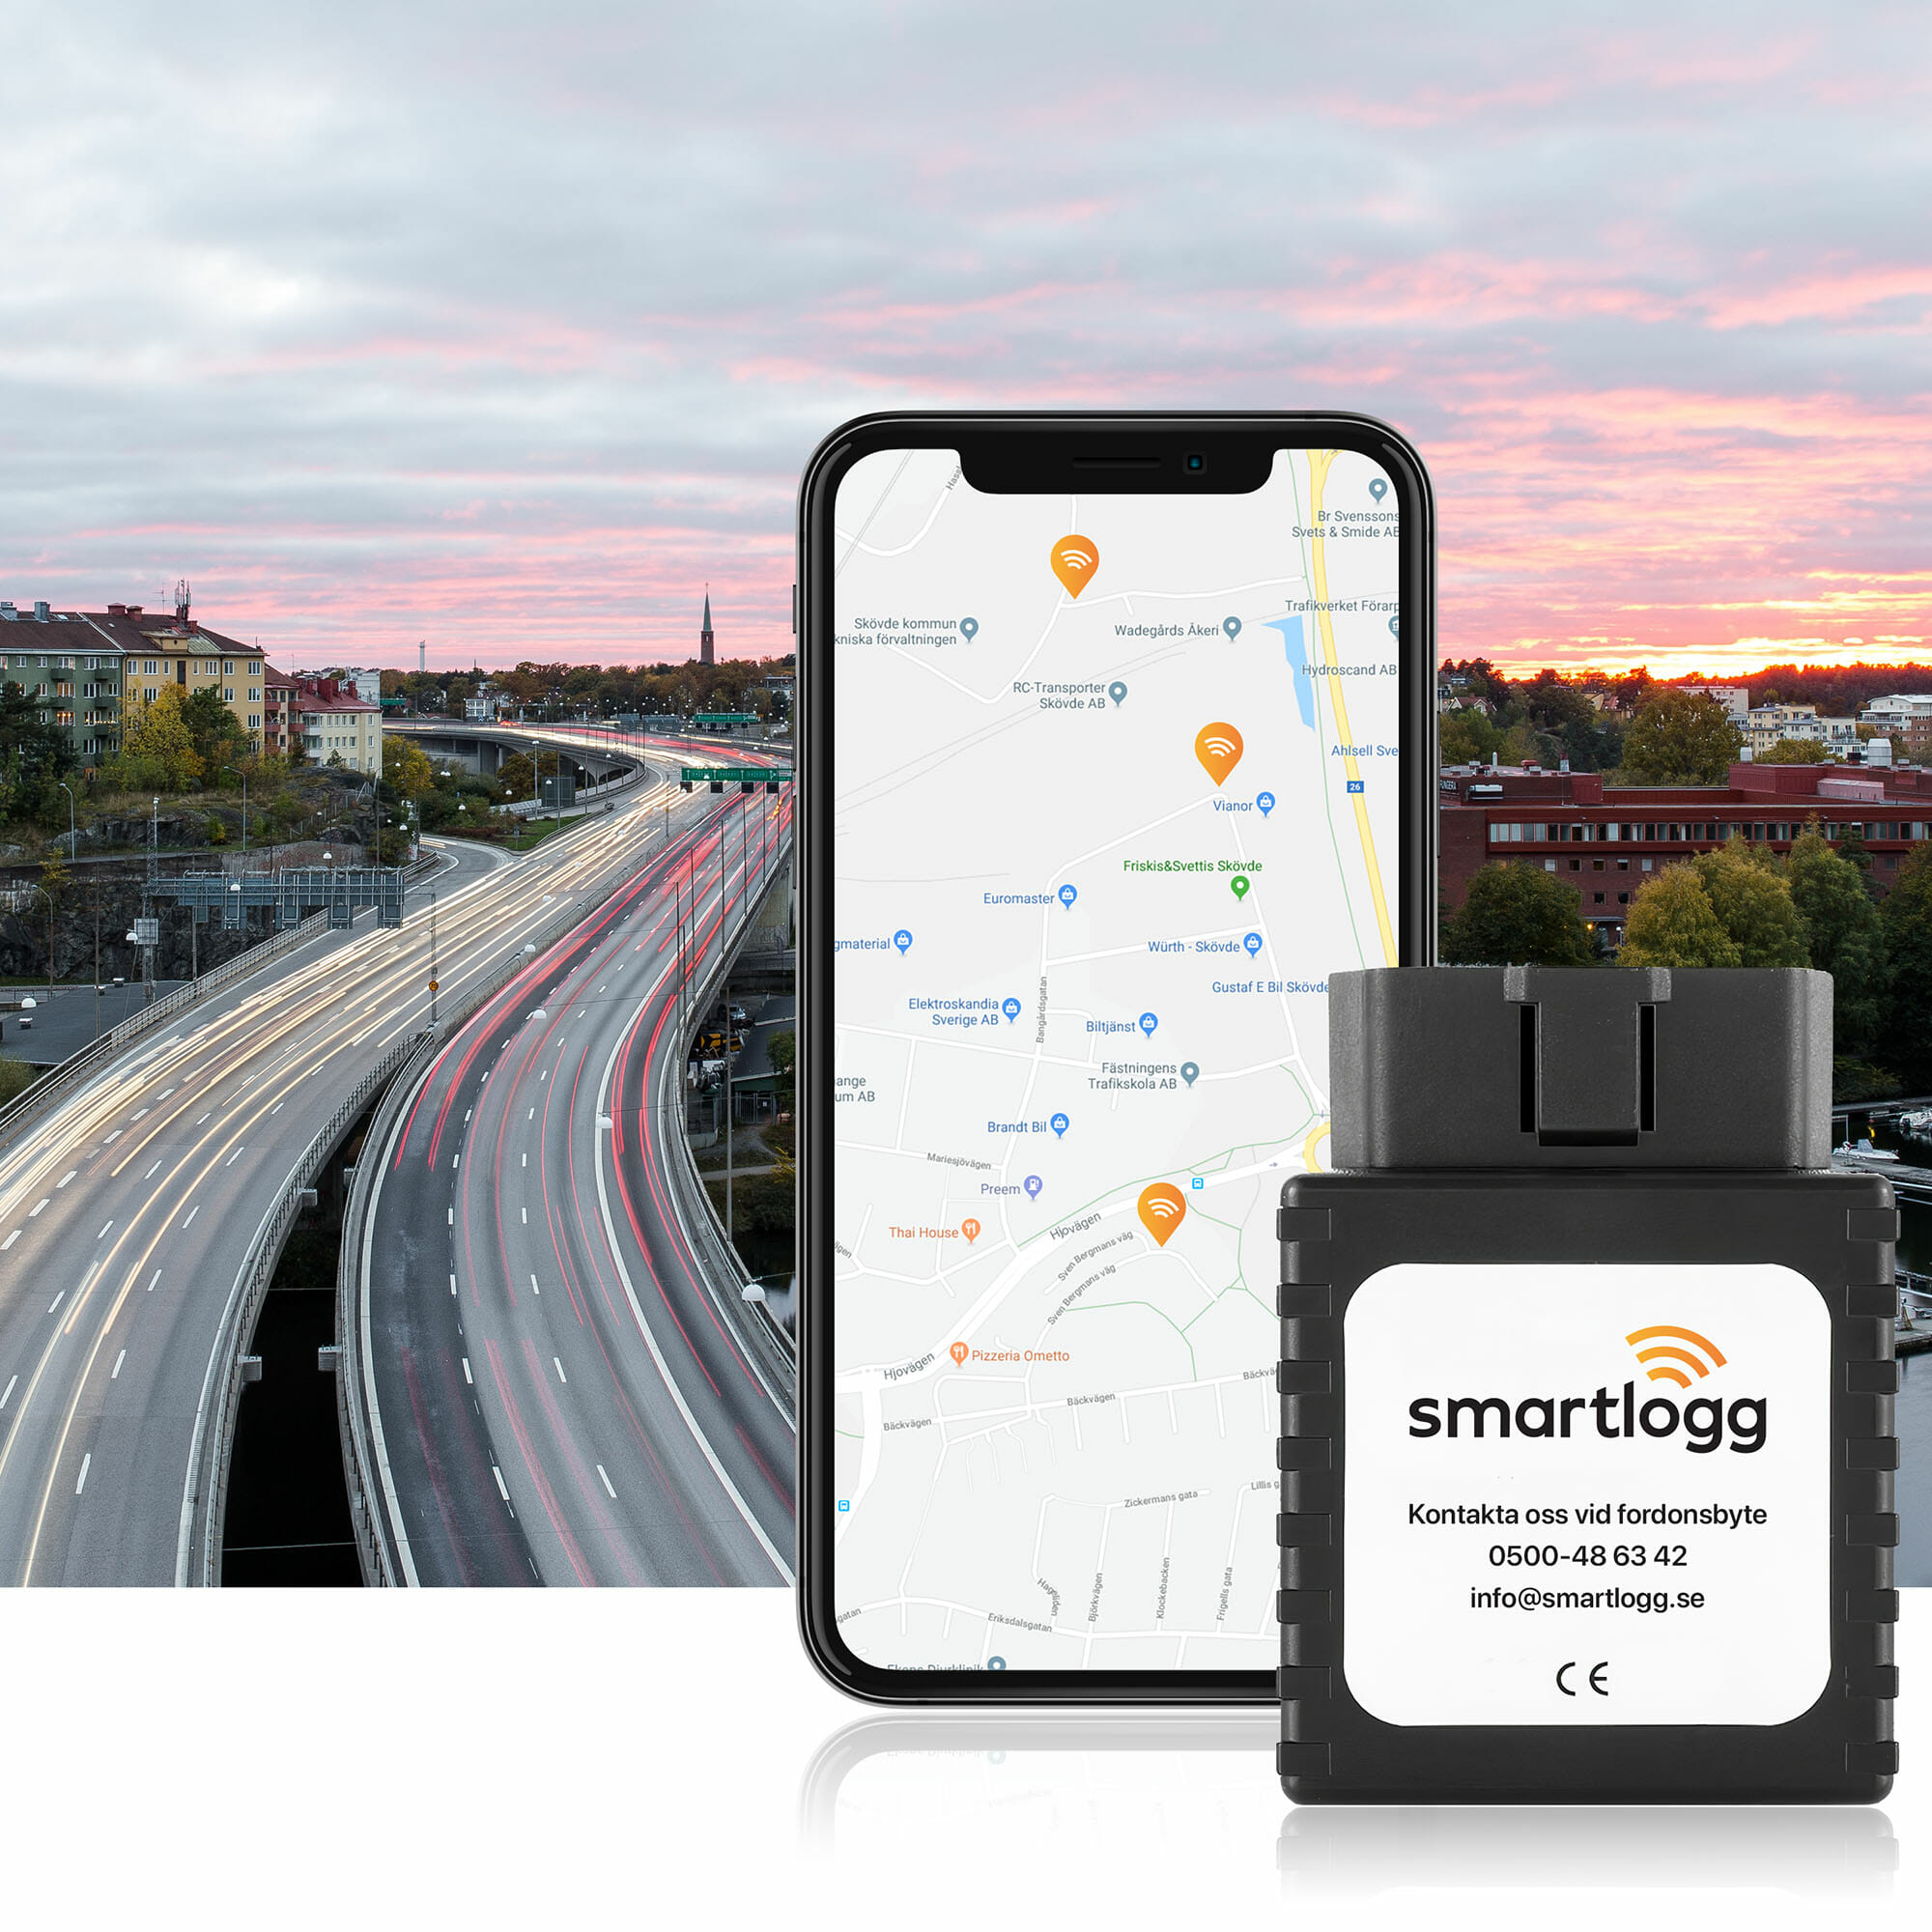 en automatisk körjournal från smartlogg framför en mobil och en väg